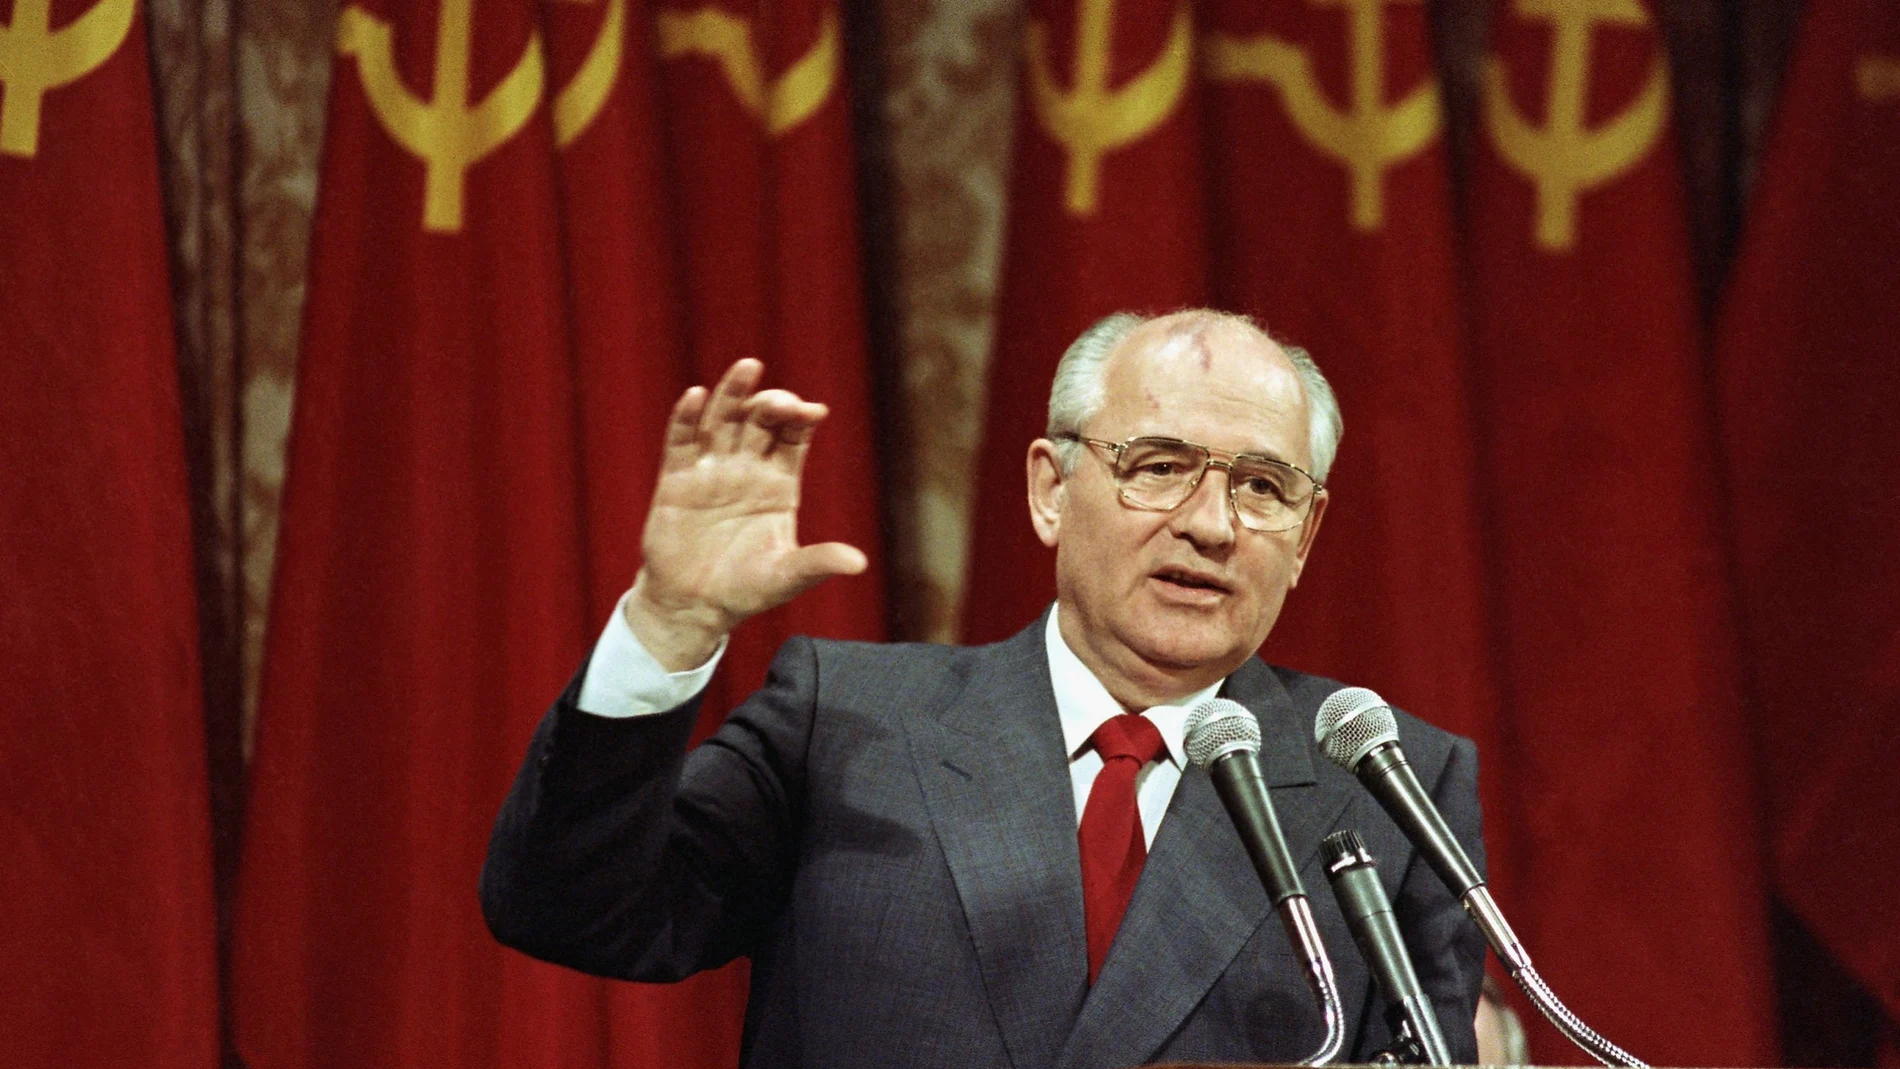 El exdirigente soviético Mijaíl Gorbachov será enterrado en el cementerio de Novodevichy de Moscú